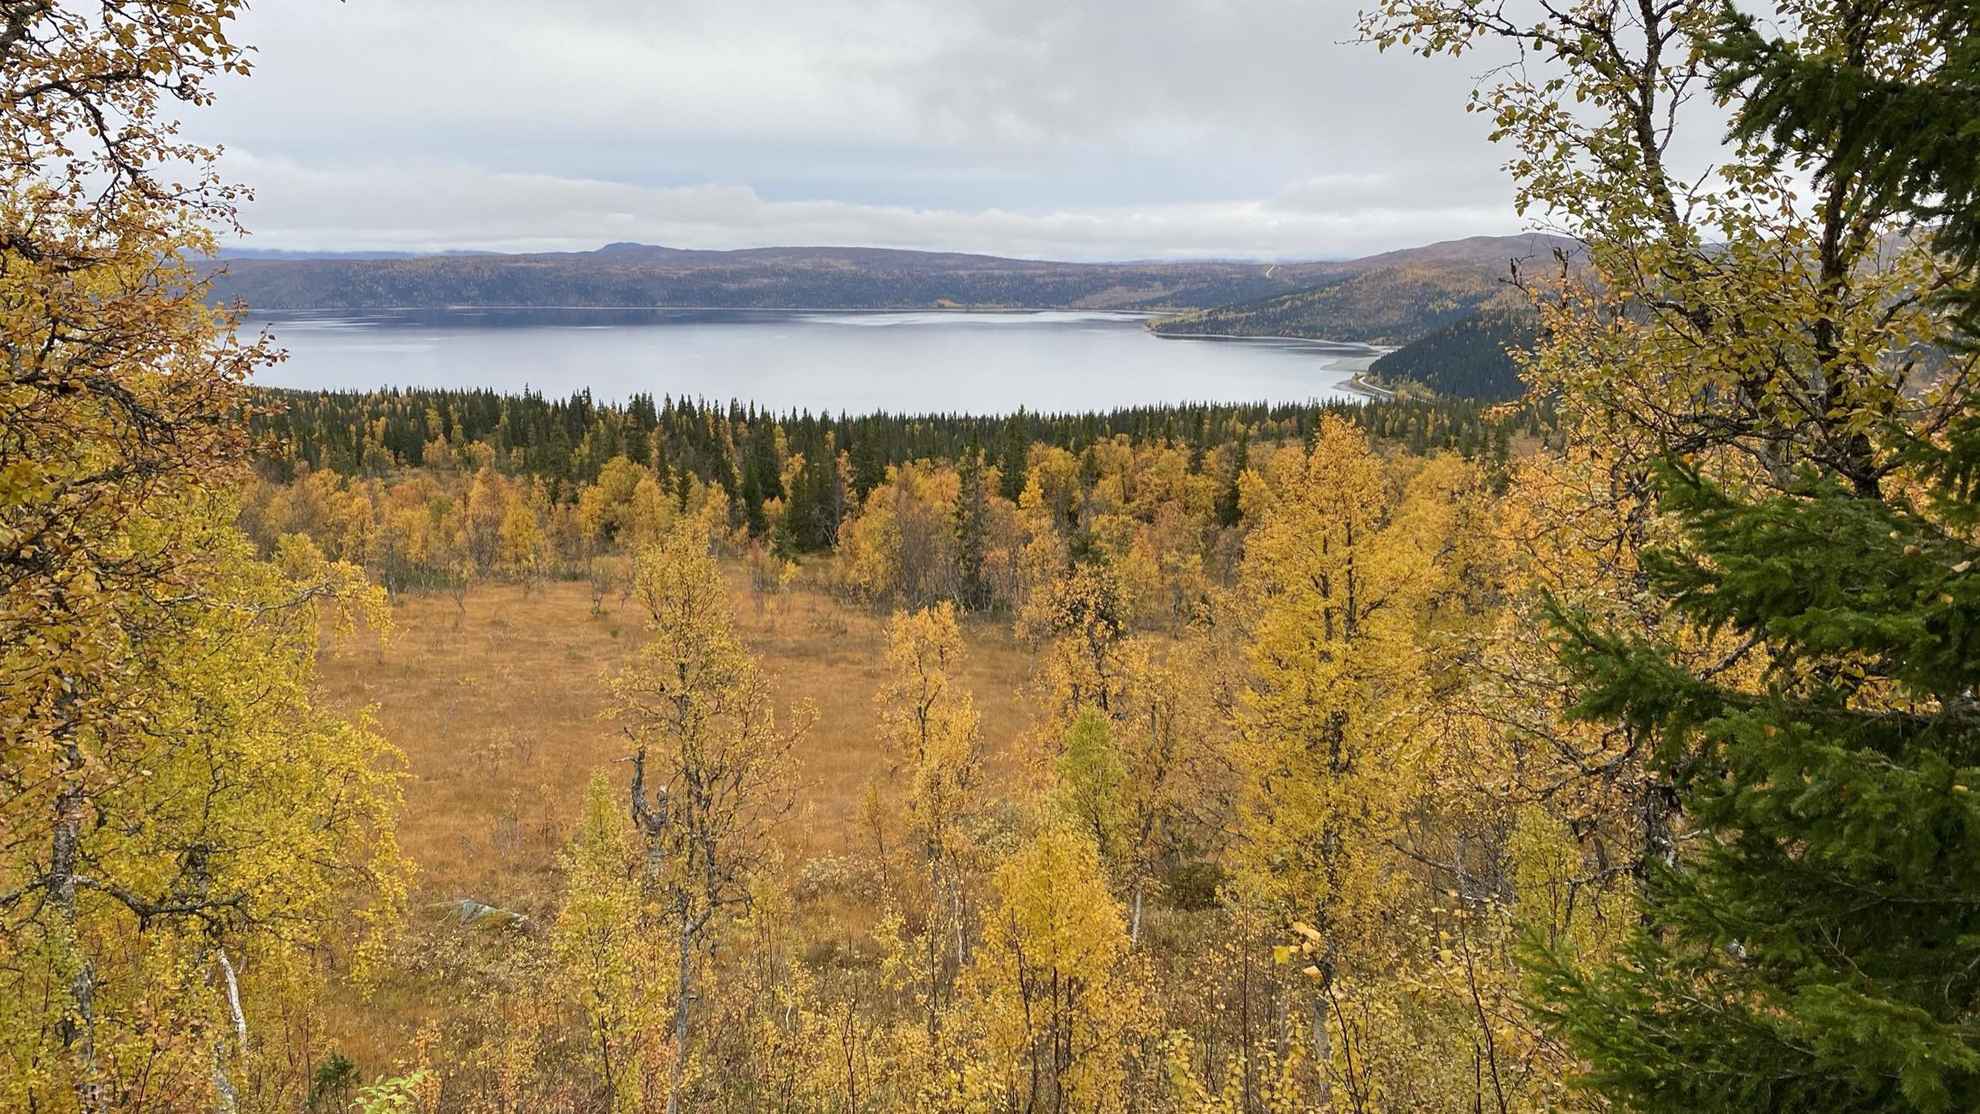 Un lac est entouré de montagnes et de forêts. Les arbres ont des couleurs d'automne jaune et orange.